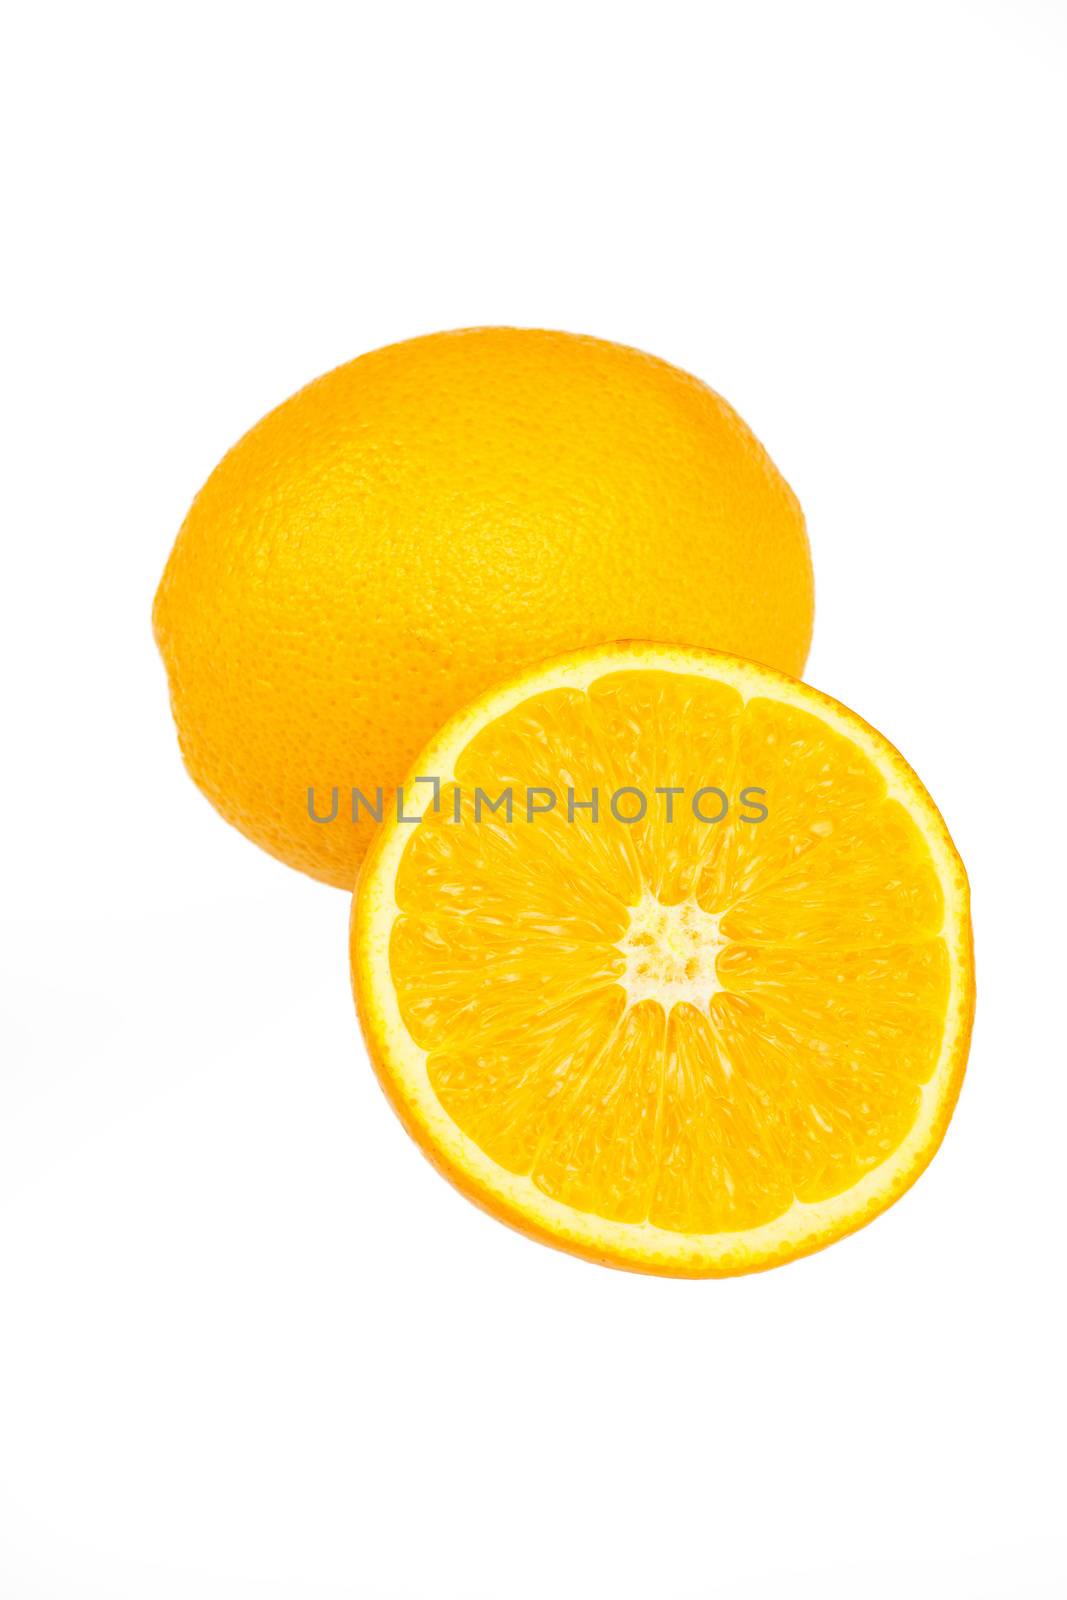 Slice a fresh juicy  round orange isolated on white 